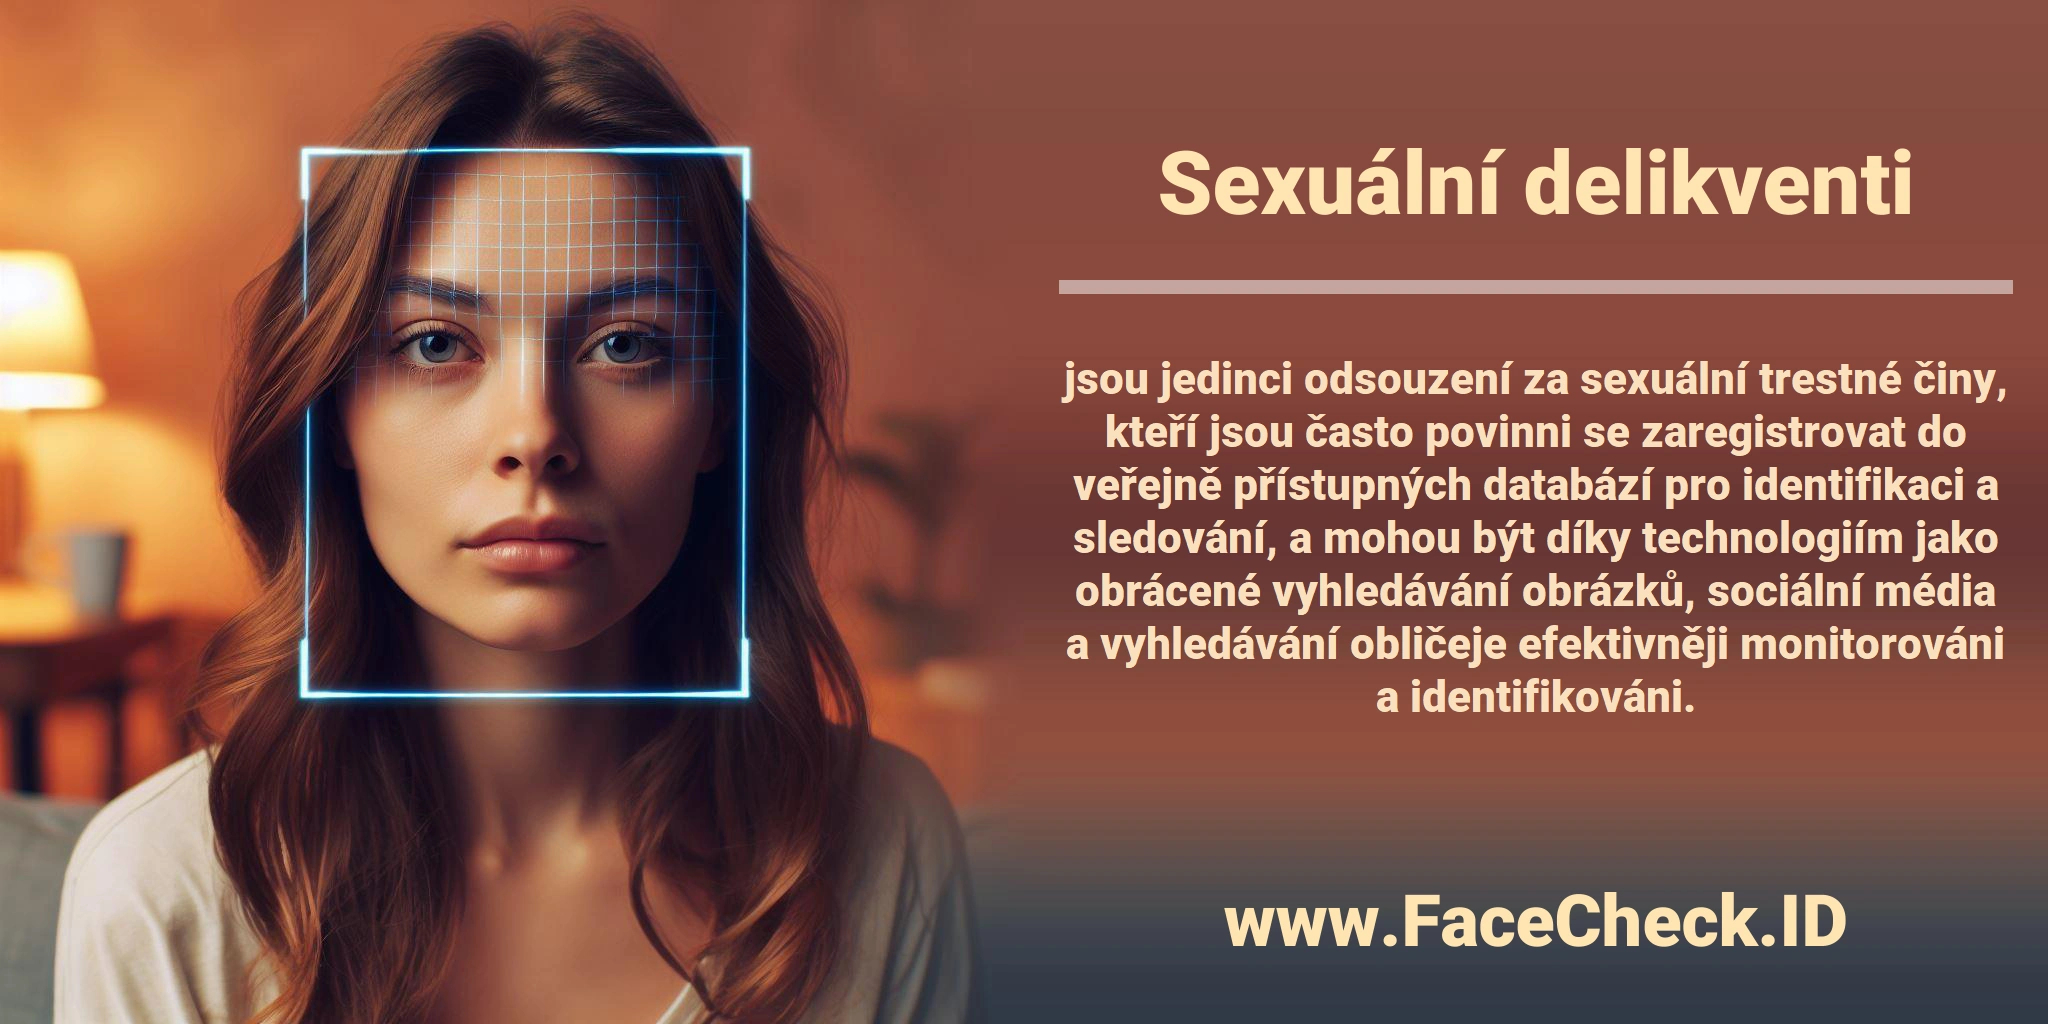 <b>Sexuální delikventi</b> jsou jedinci odsouzení za sexuální trestné činy, kteří jsou často povinni se zaregistrovat do veřejně přístupných databází pro identifikaci a sledování, a mohou být díky technologiím jako obrácené vyhledávání obrázků, sociální média a vyhledávání obličeje efektivněji monitorováni a identifikováni.